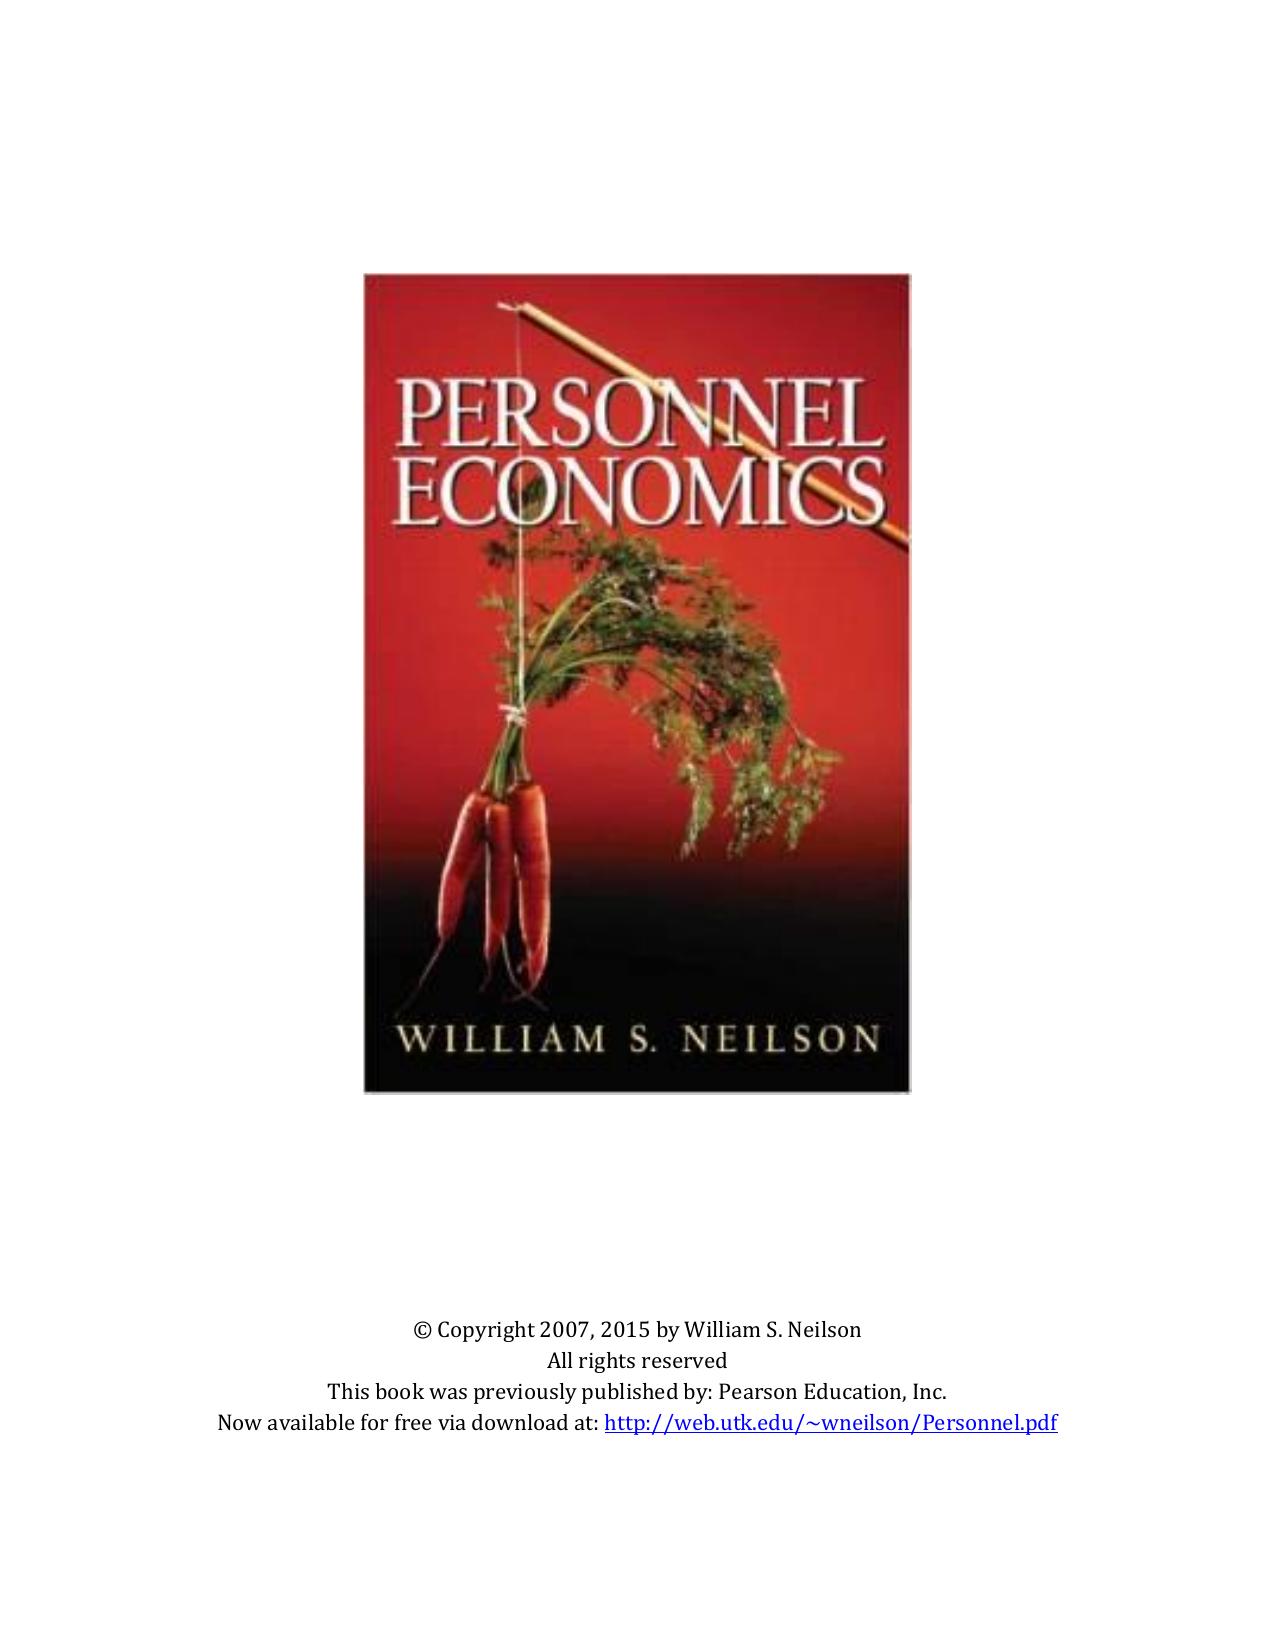 PERSONNEL ECONOMICS